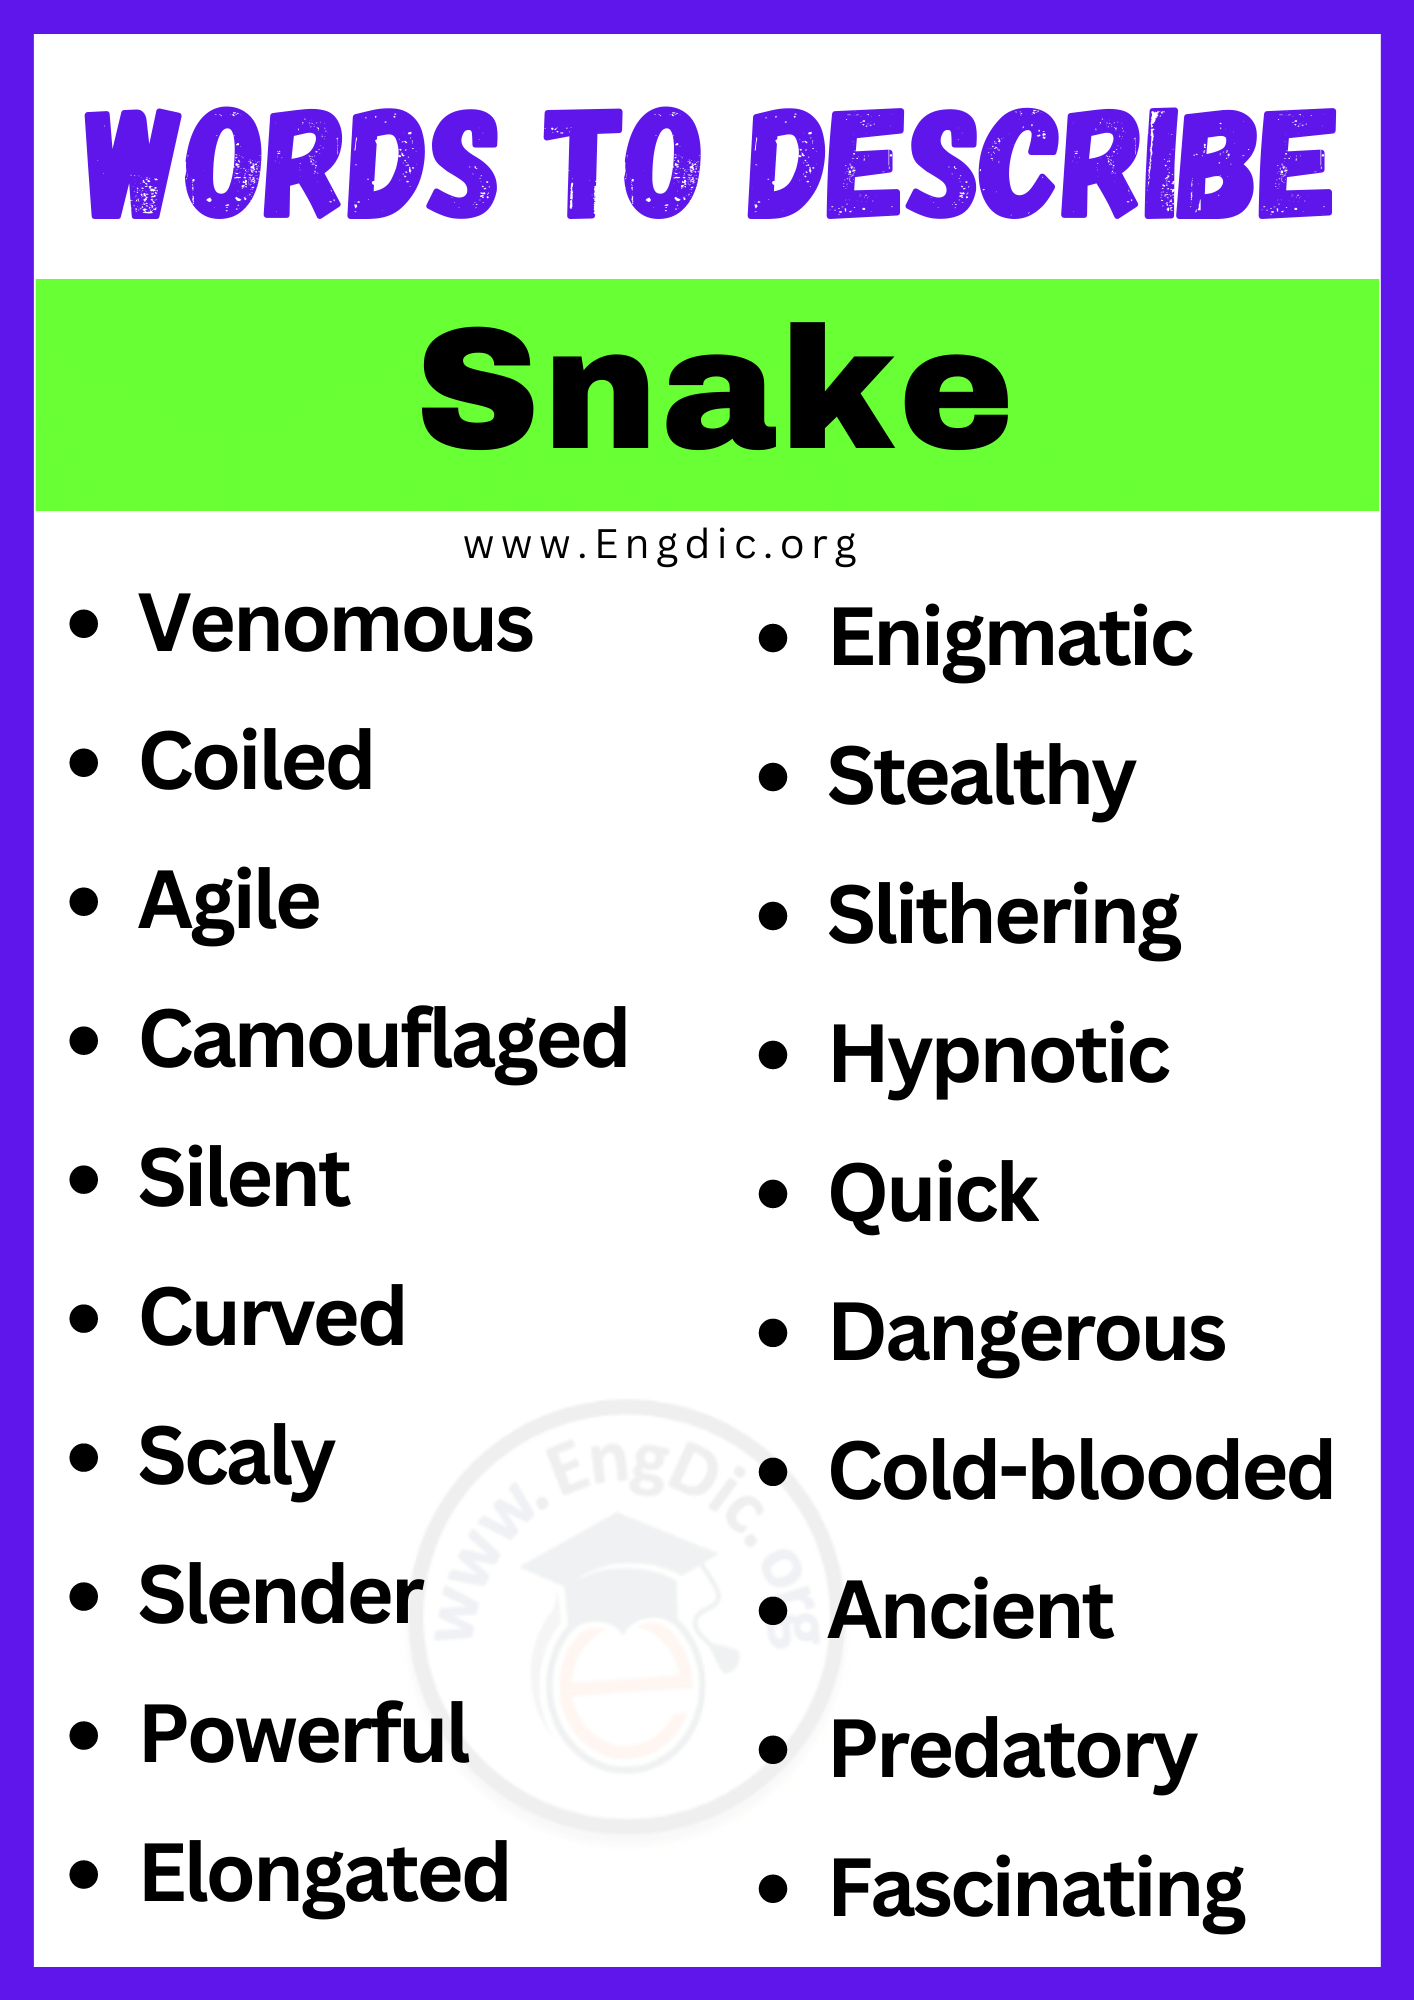 Words to Describe a Snake